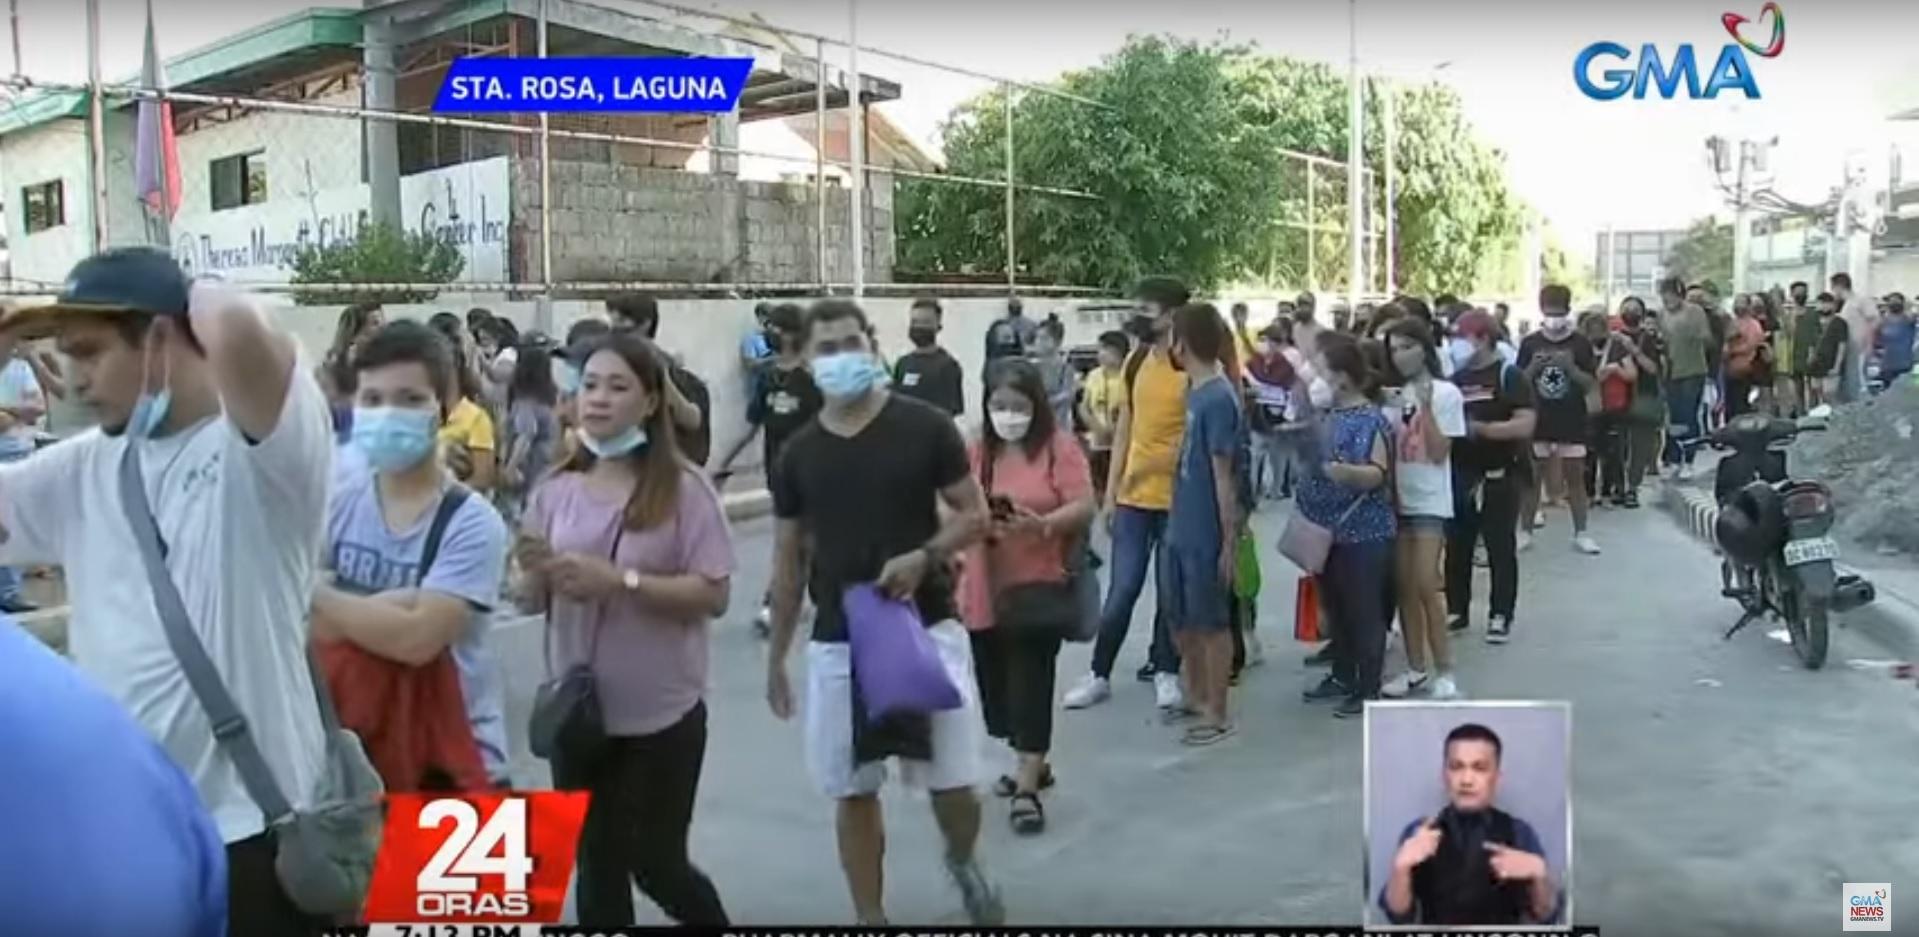 Pemerintah akan putuskan jab COVID-19 wajib setelah vaksinasi 3 hari GMA News Online